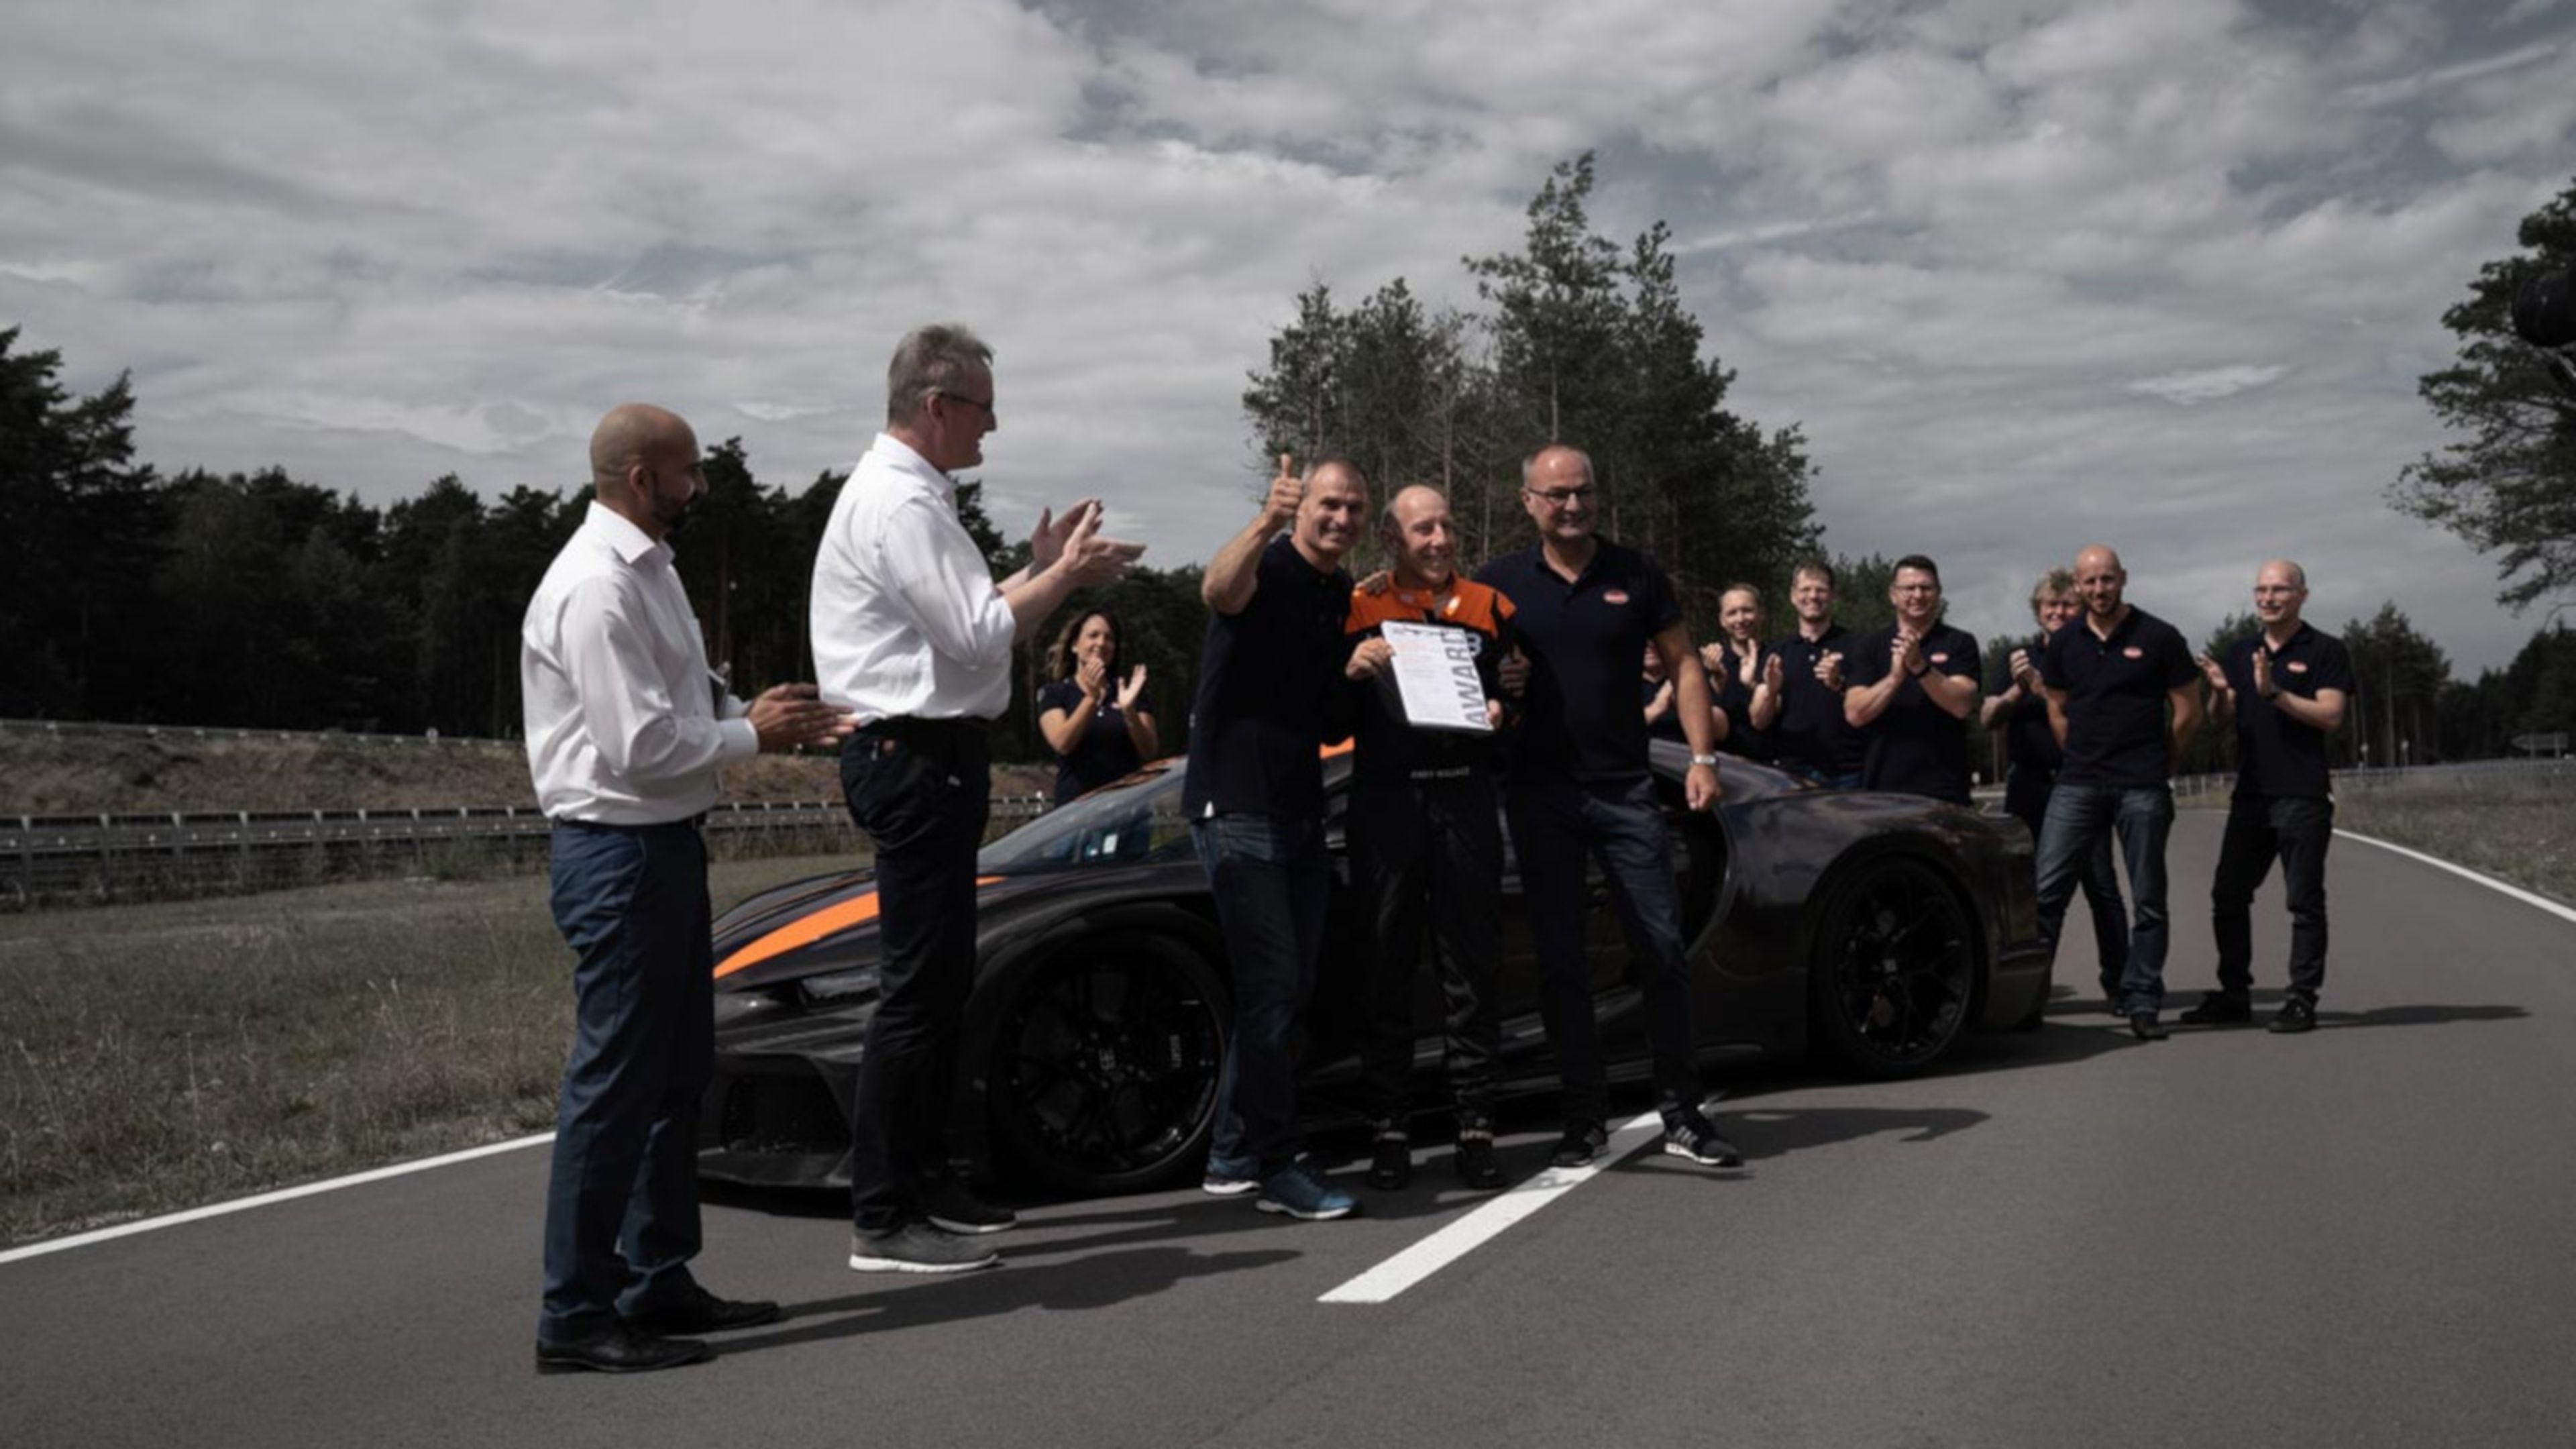 En el centro de la imagen, Andy Wallace posa orgulloso con el certificado TÜV que acredita el récord de velocidad logrado.